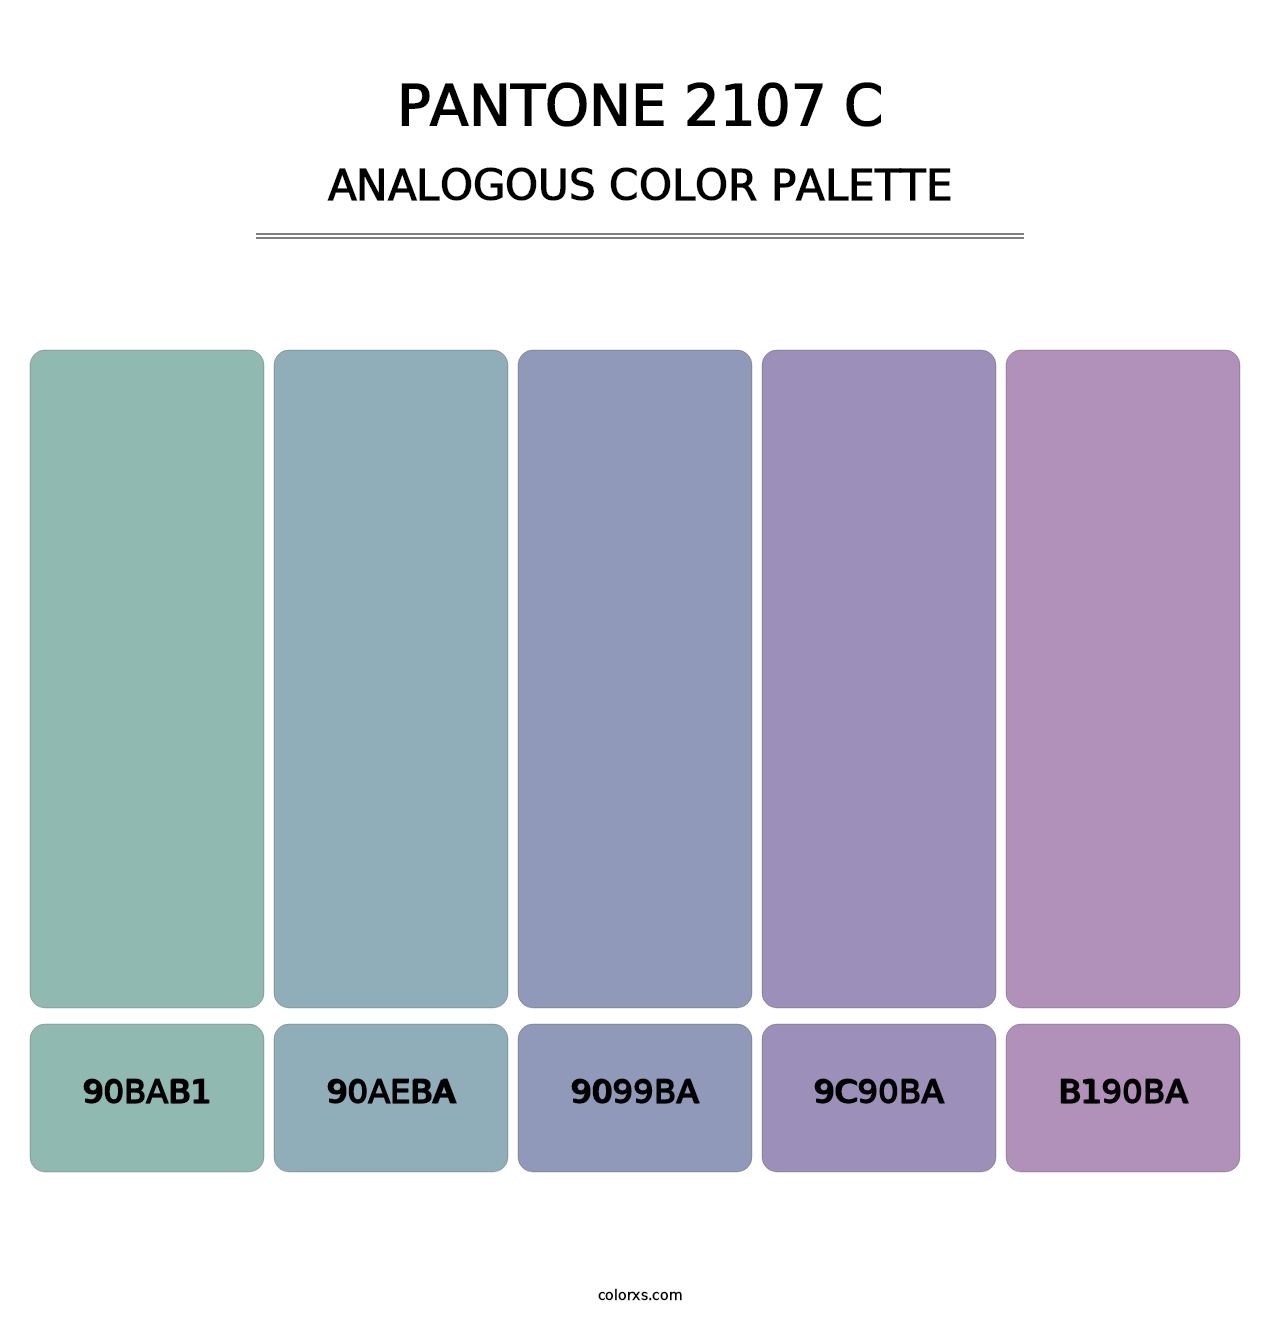 PANTONE 2107 C - Analogous Color Palette